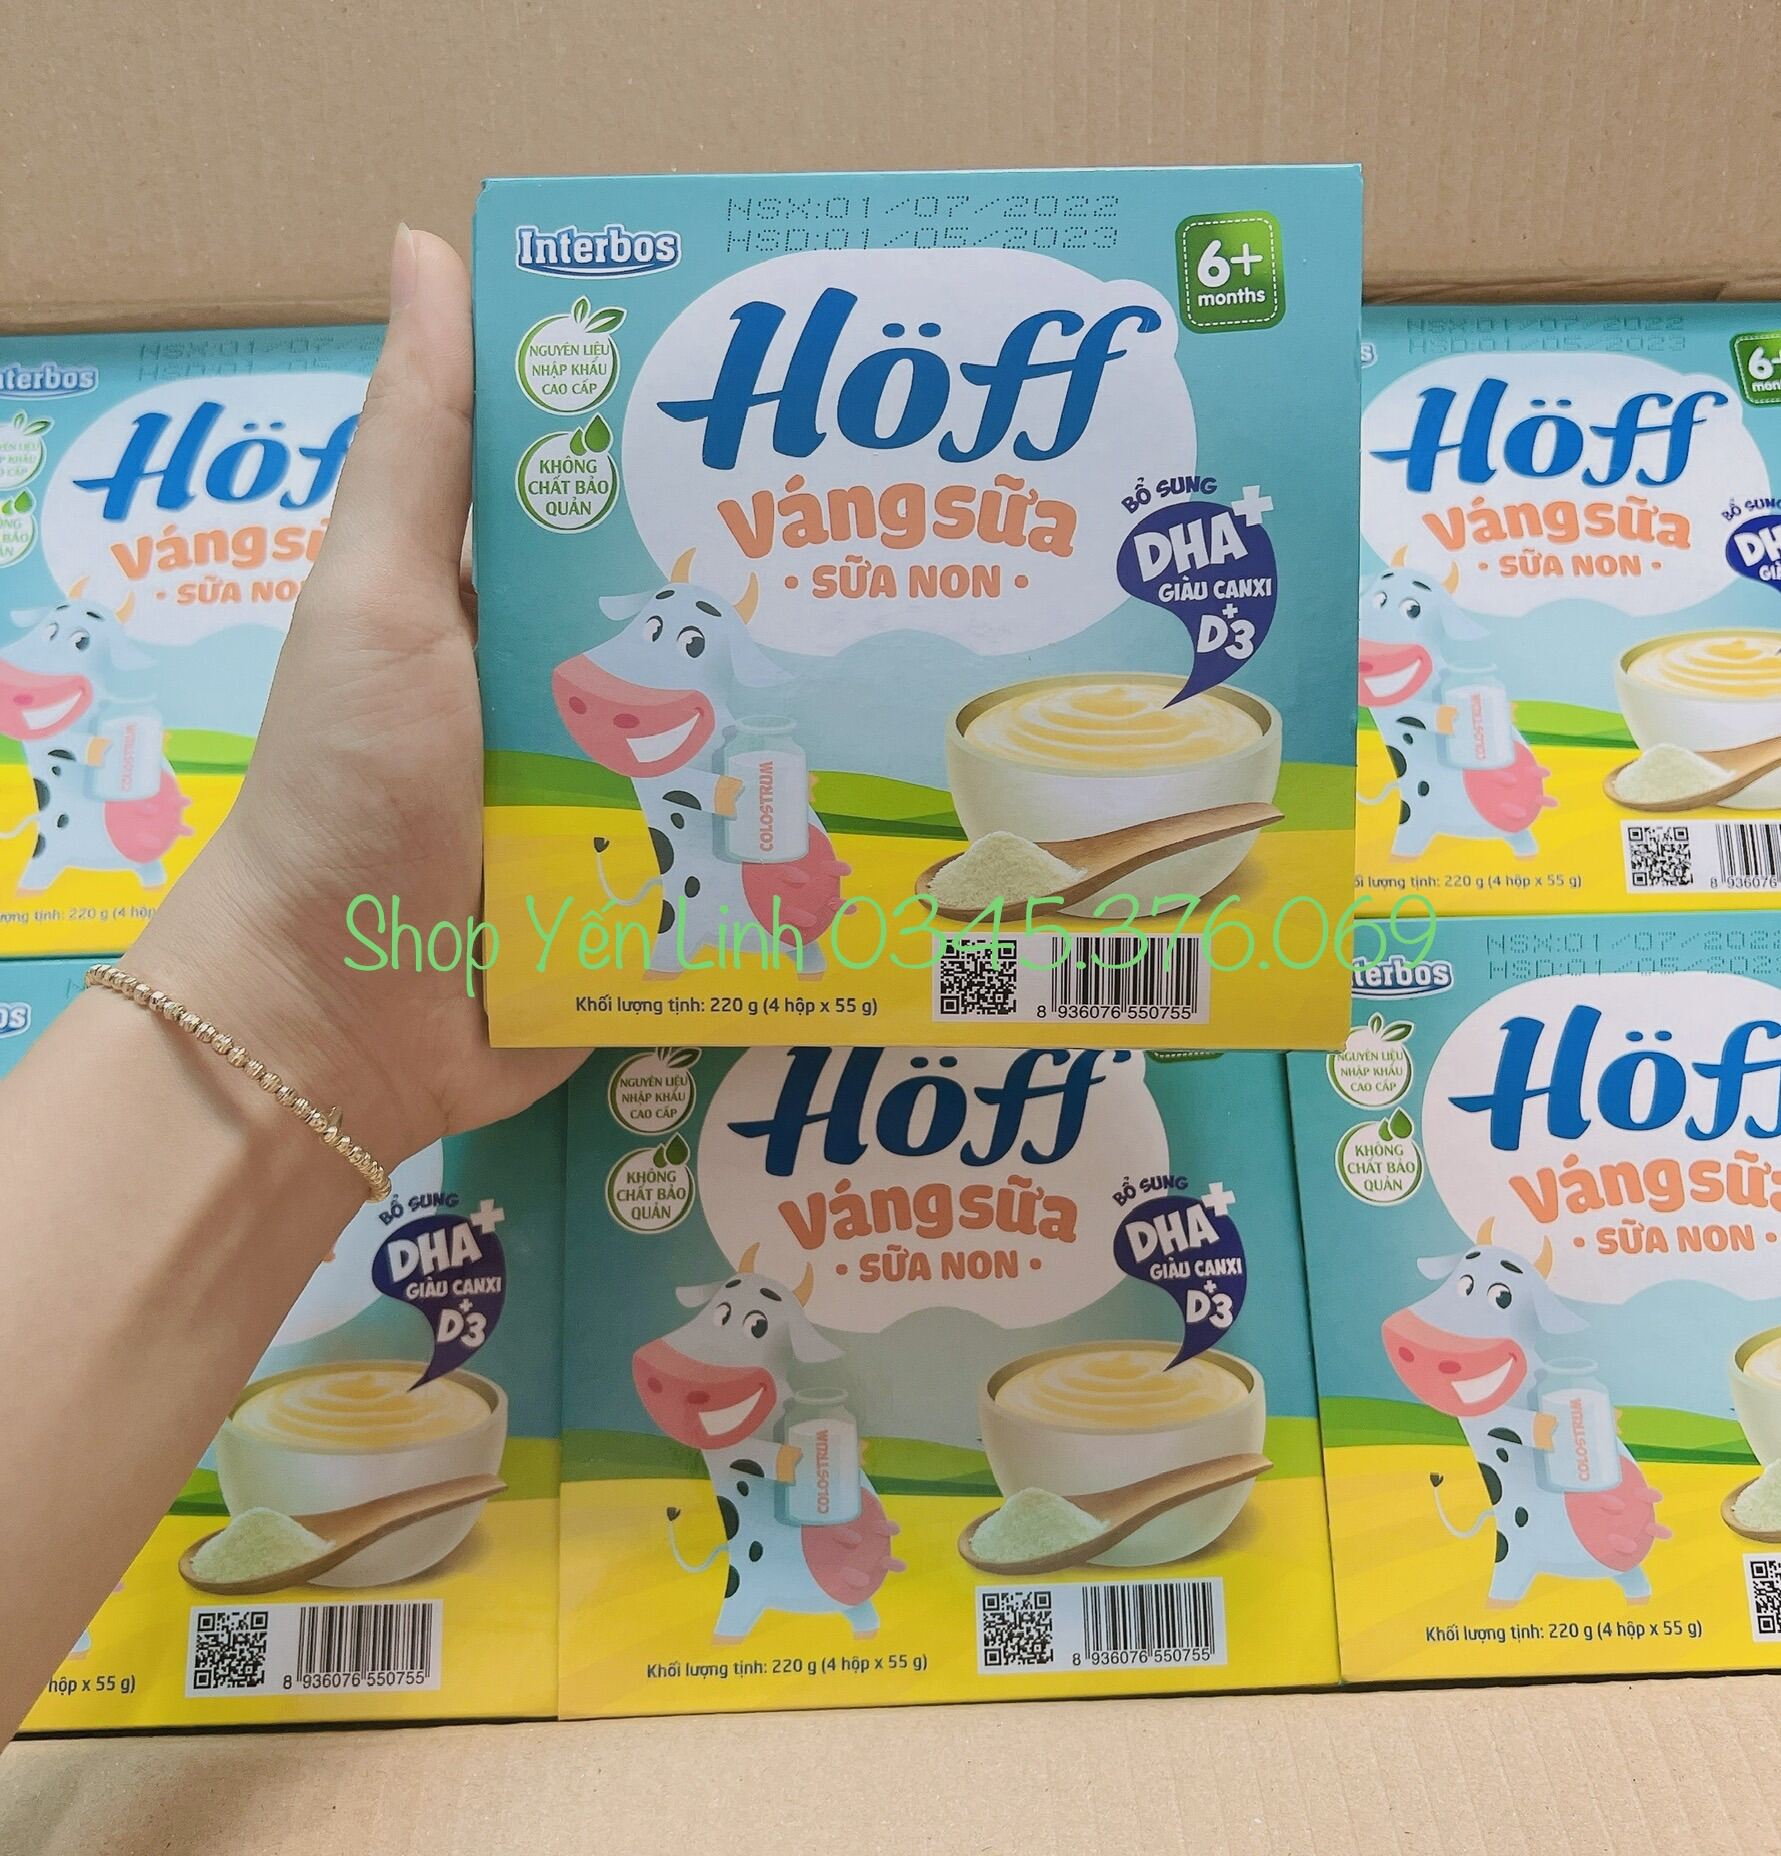 Thùng 48 hộp váng sữa Hoff sữa non  date mới nhất